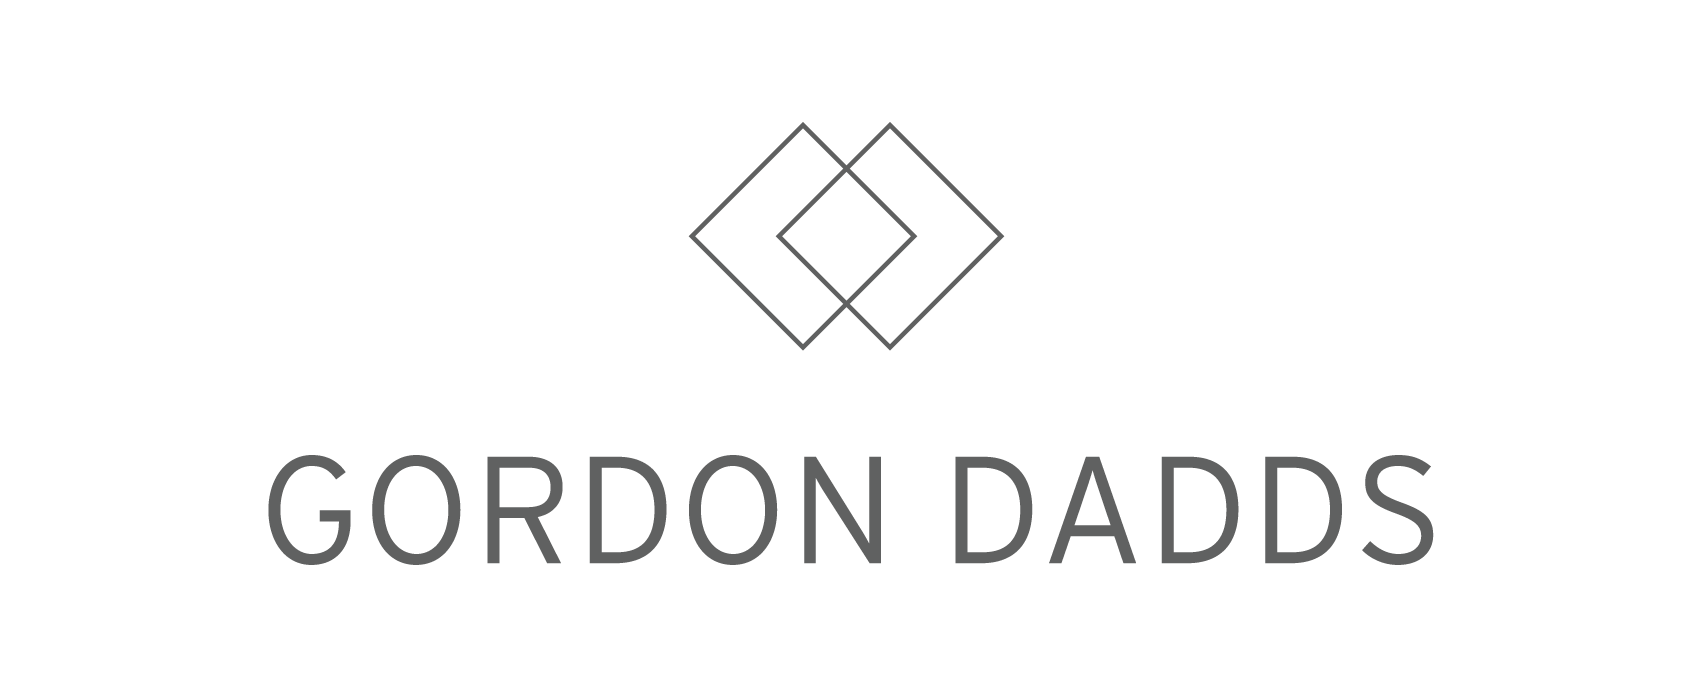 Gordon Dadds.png